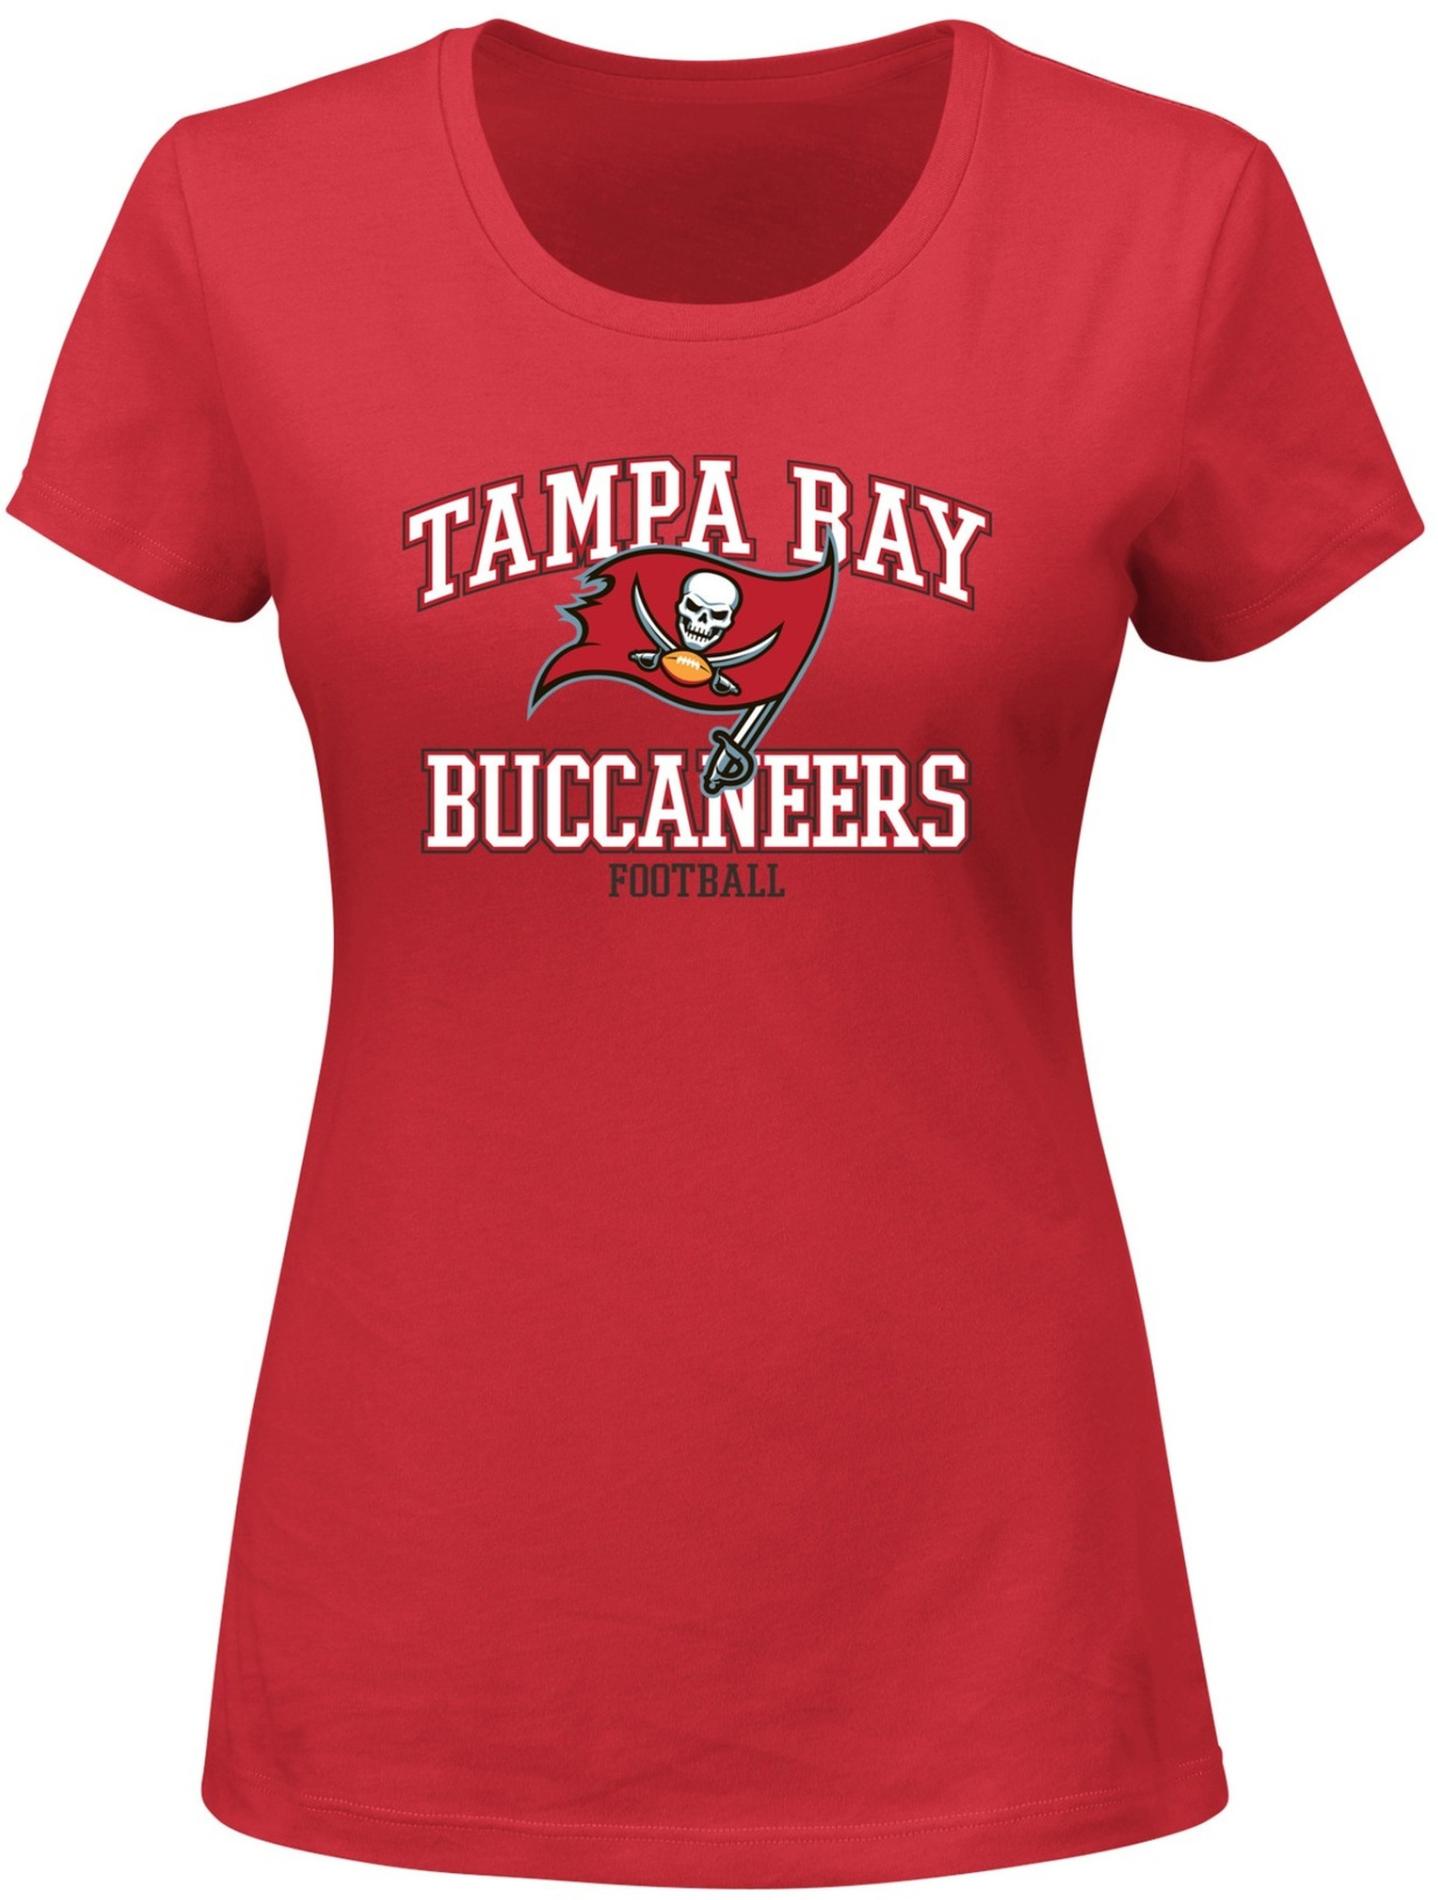 NFL Women's Graphic T-Shirt - Tampa Bay Buccaneers